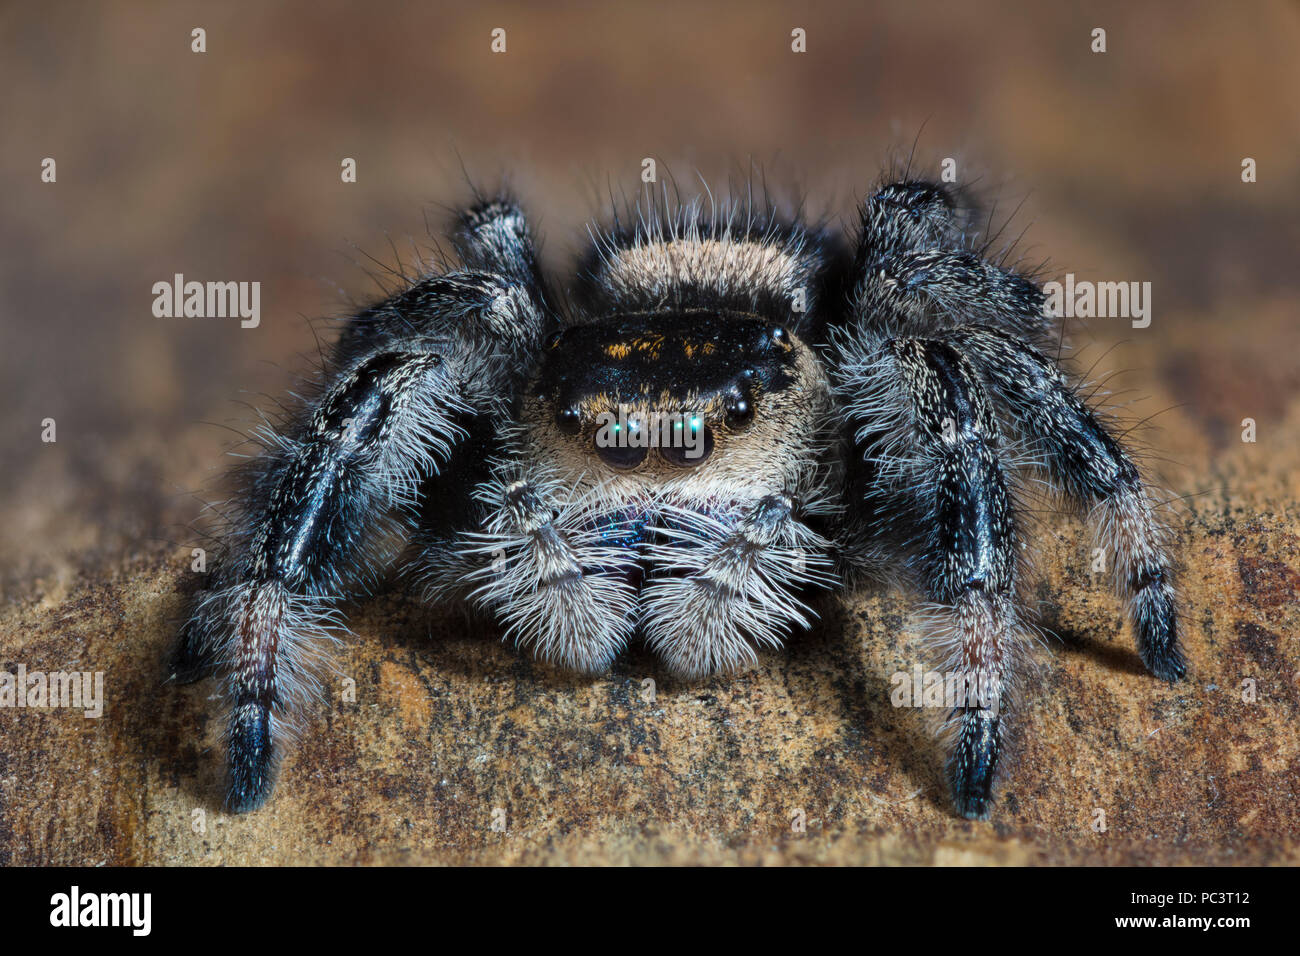 Nahaufnahme eines Regal Jumping Spider, Phidippus regius Stockfoto